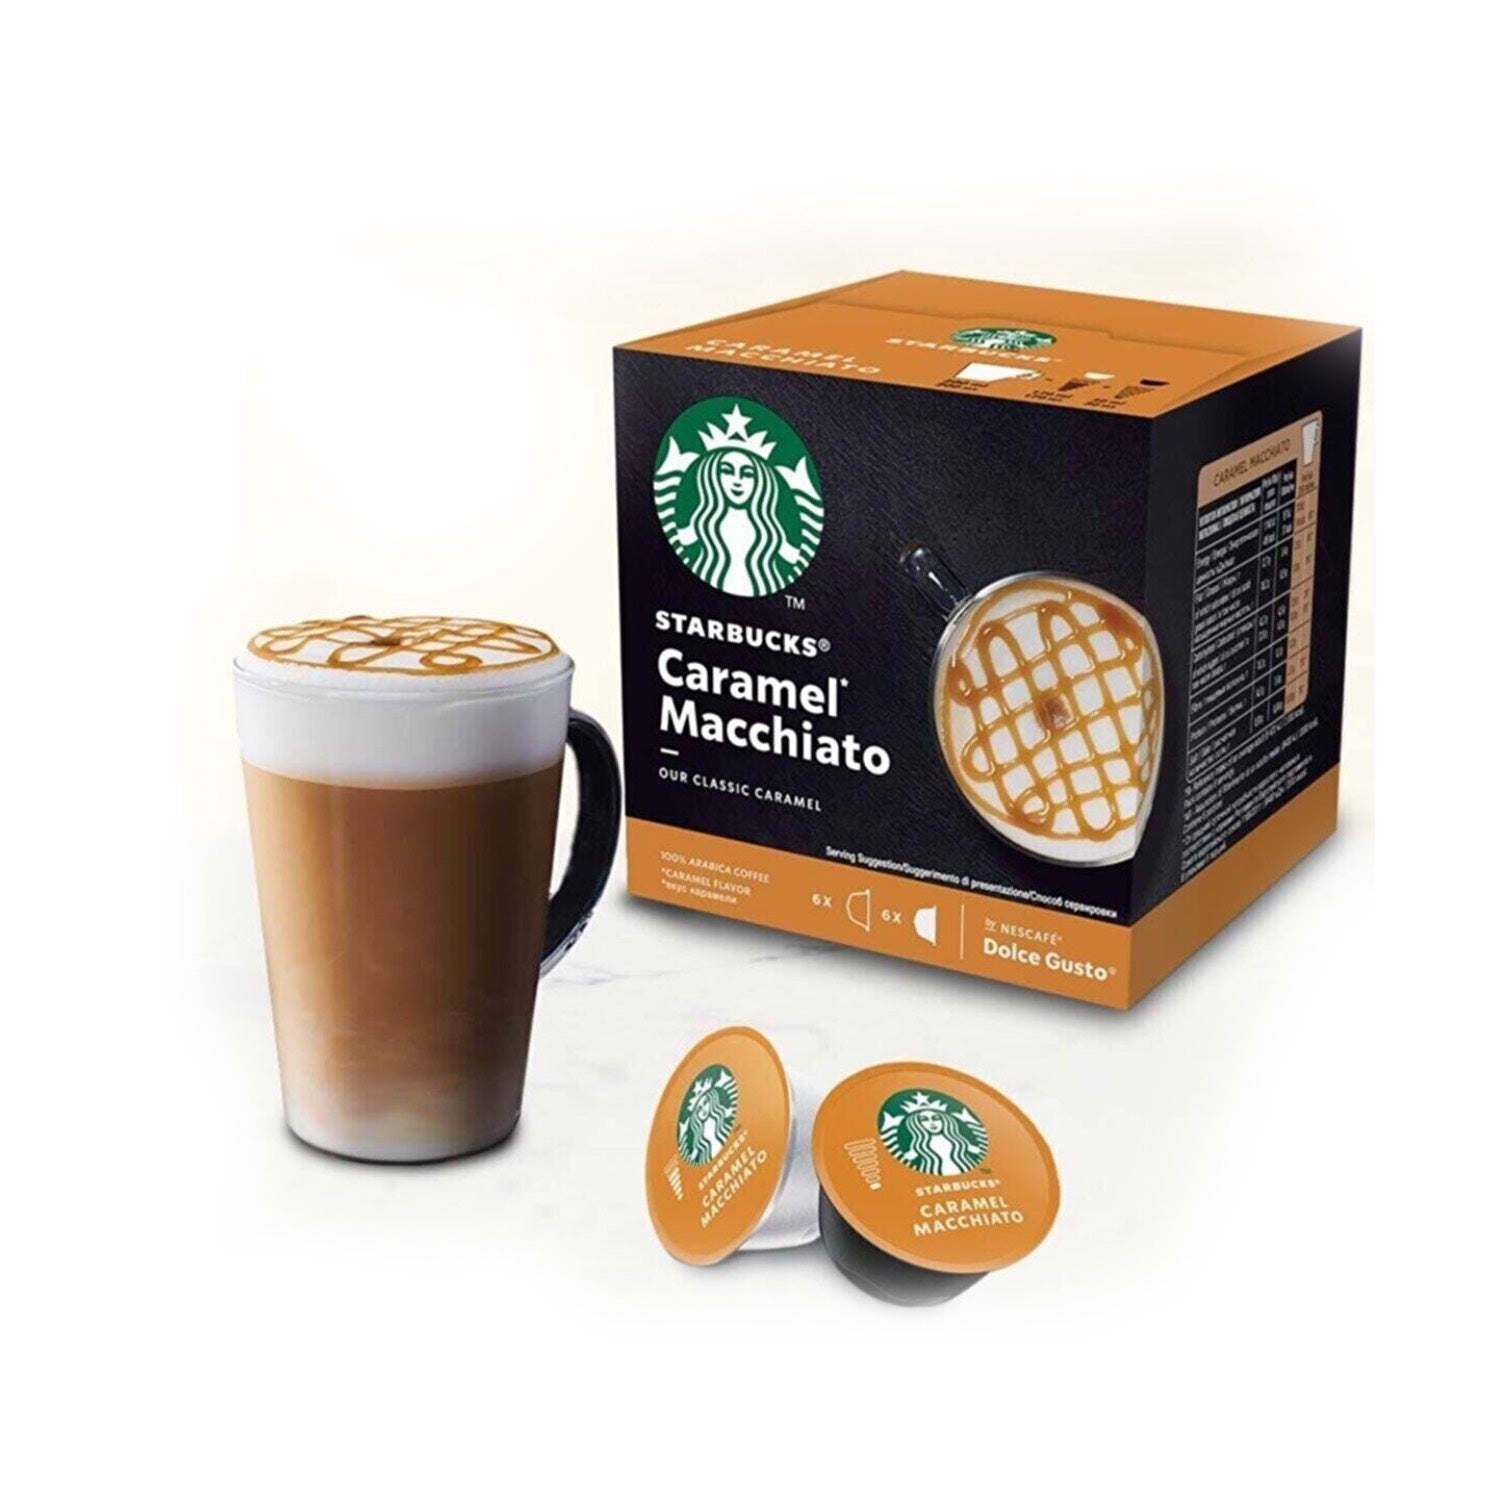 Nescafe 3in1 Milky Foam Package 10 pcs. – Turcamart ®